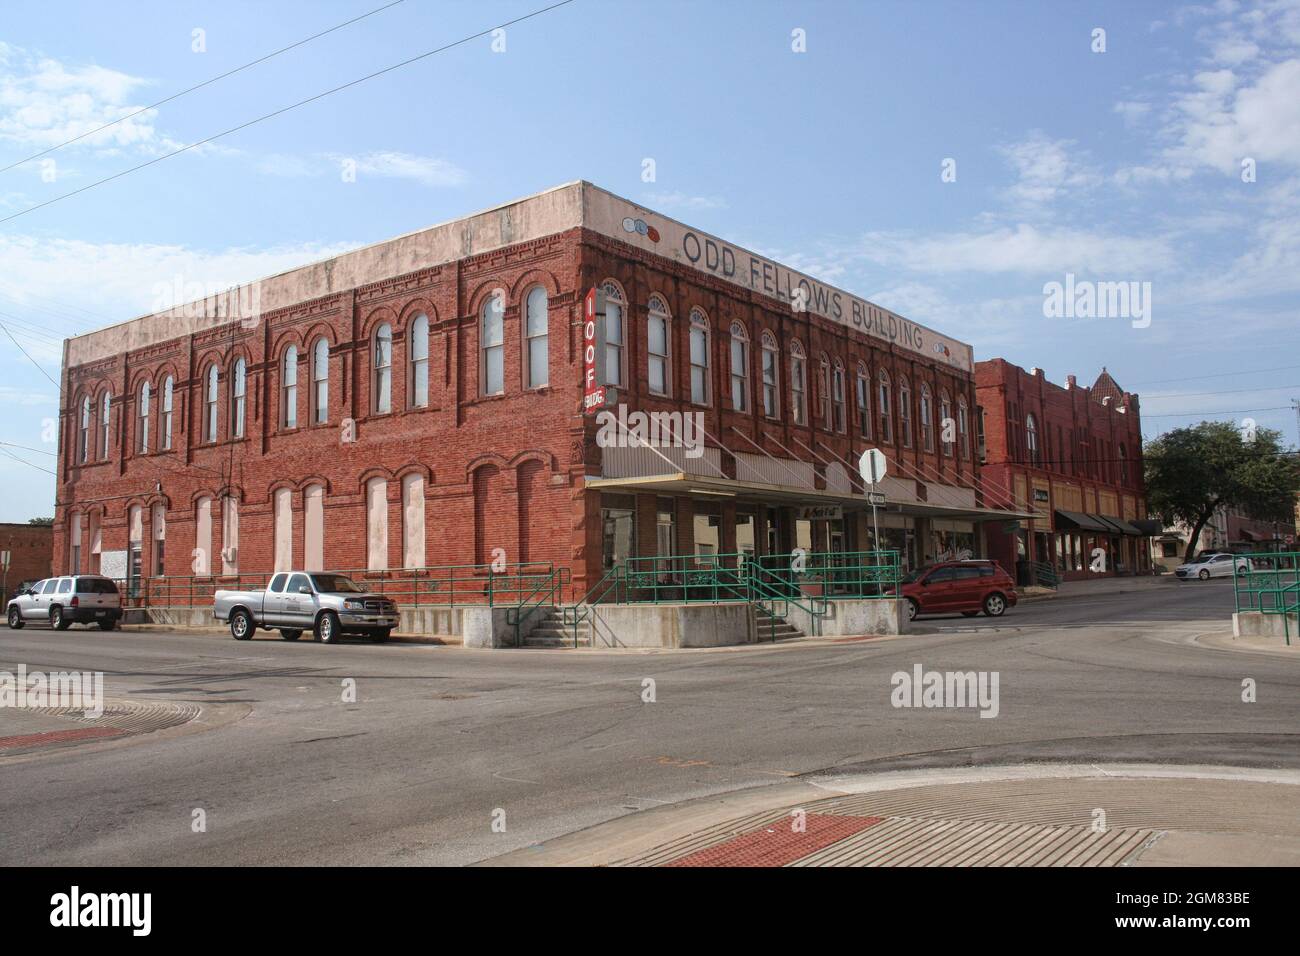 Waxahachie, TX : Historic International Odd Fellows Building in der Nähe der Innenstadt von Waxahachie. Stockfoto